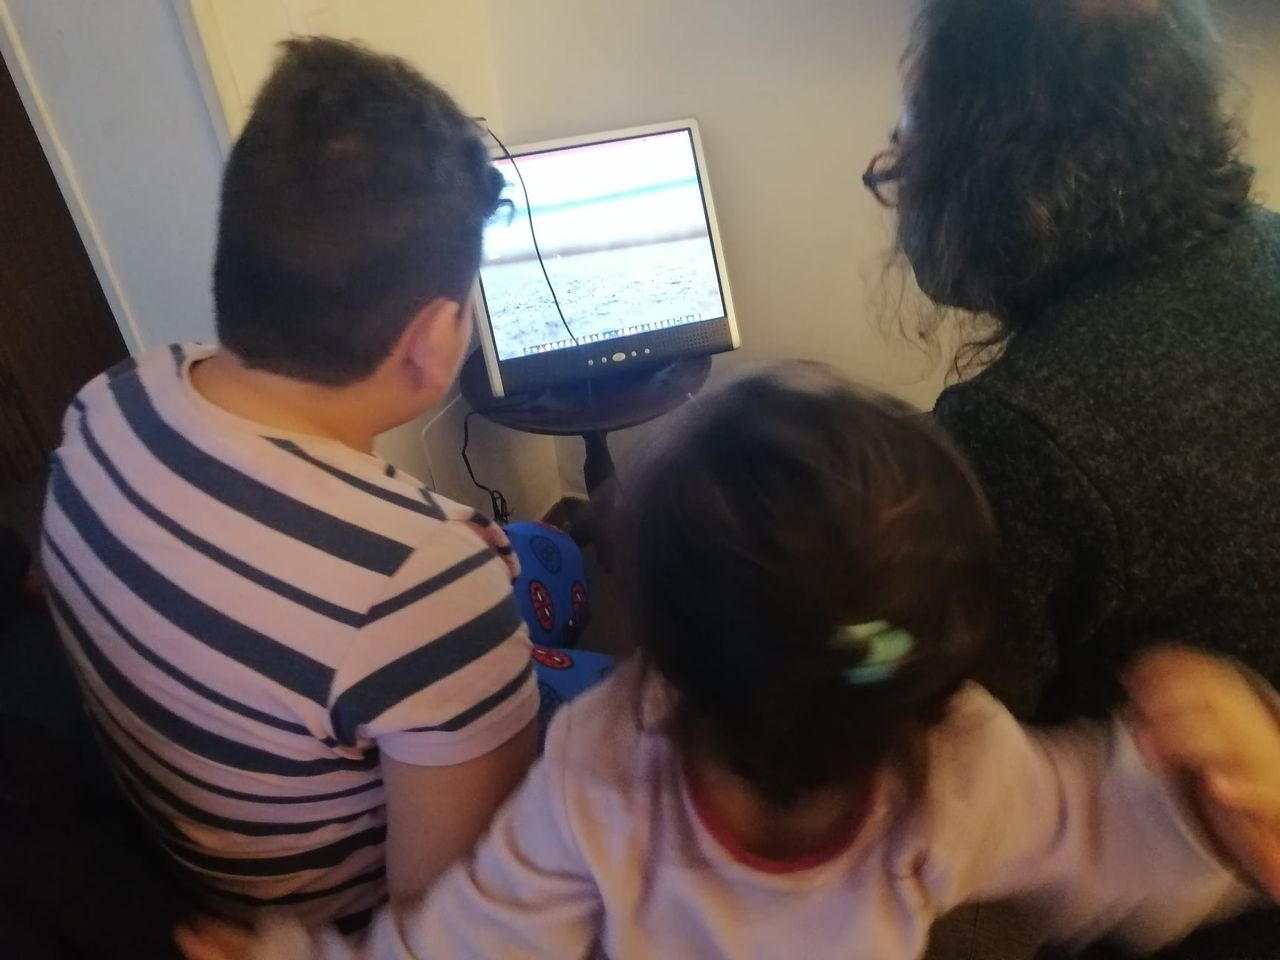 Una ONG entrega ordenadores escolares a niños sin acceso en Las Rozas, Majadahonda, Villalba, Galapagar y El Escorial